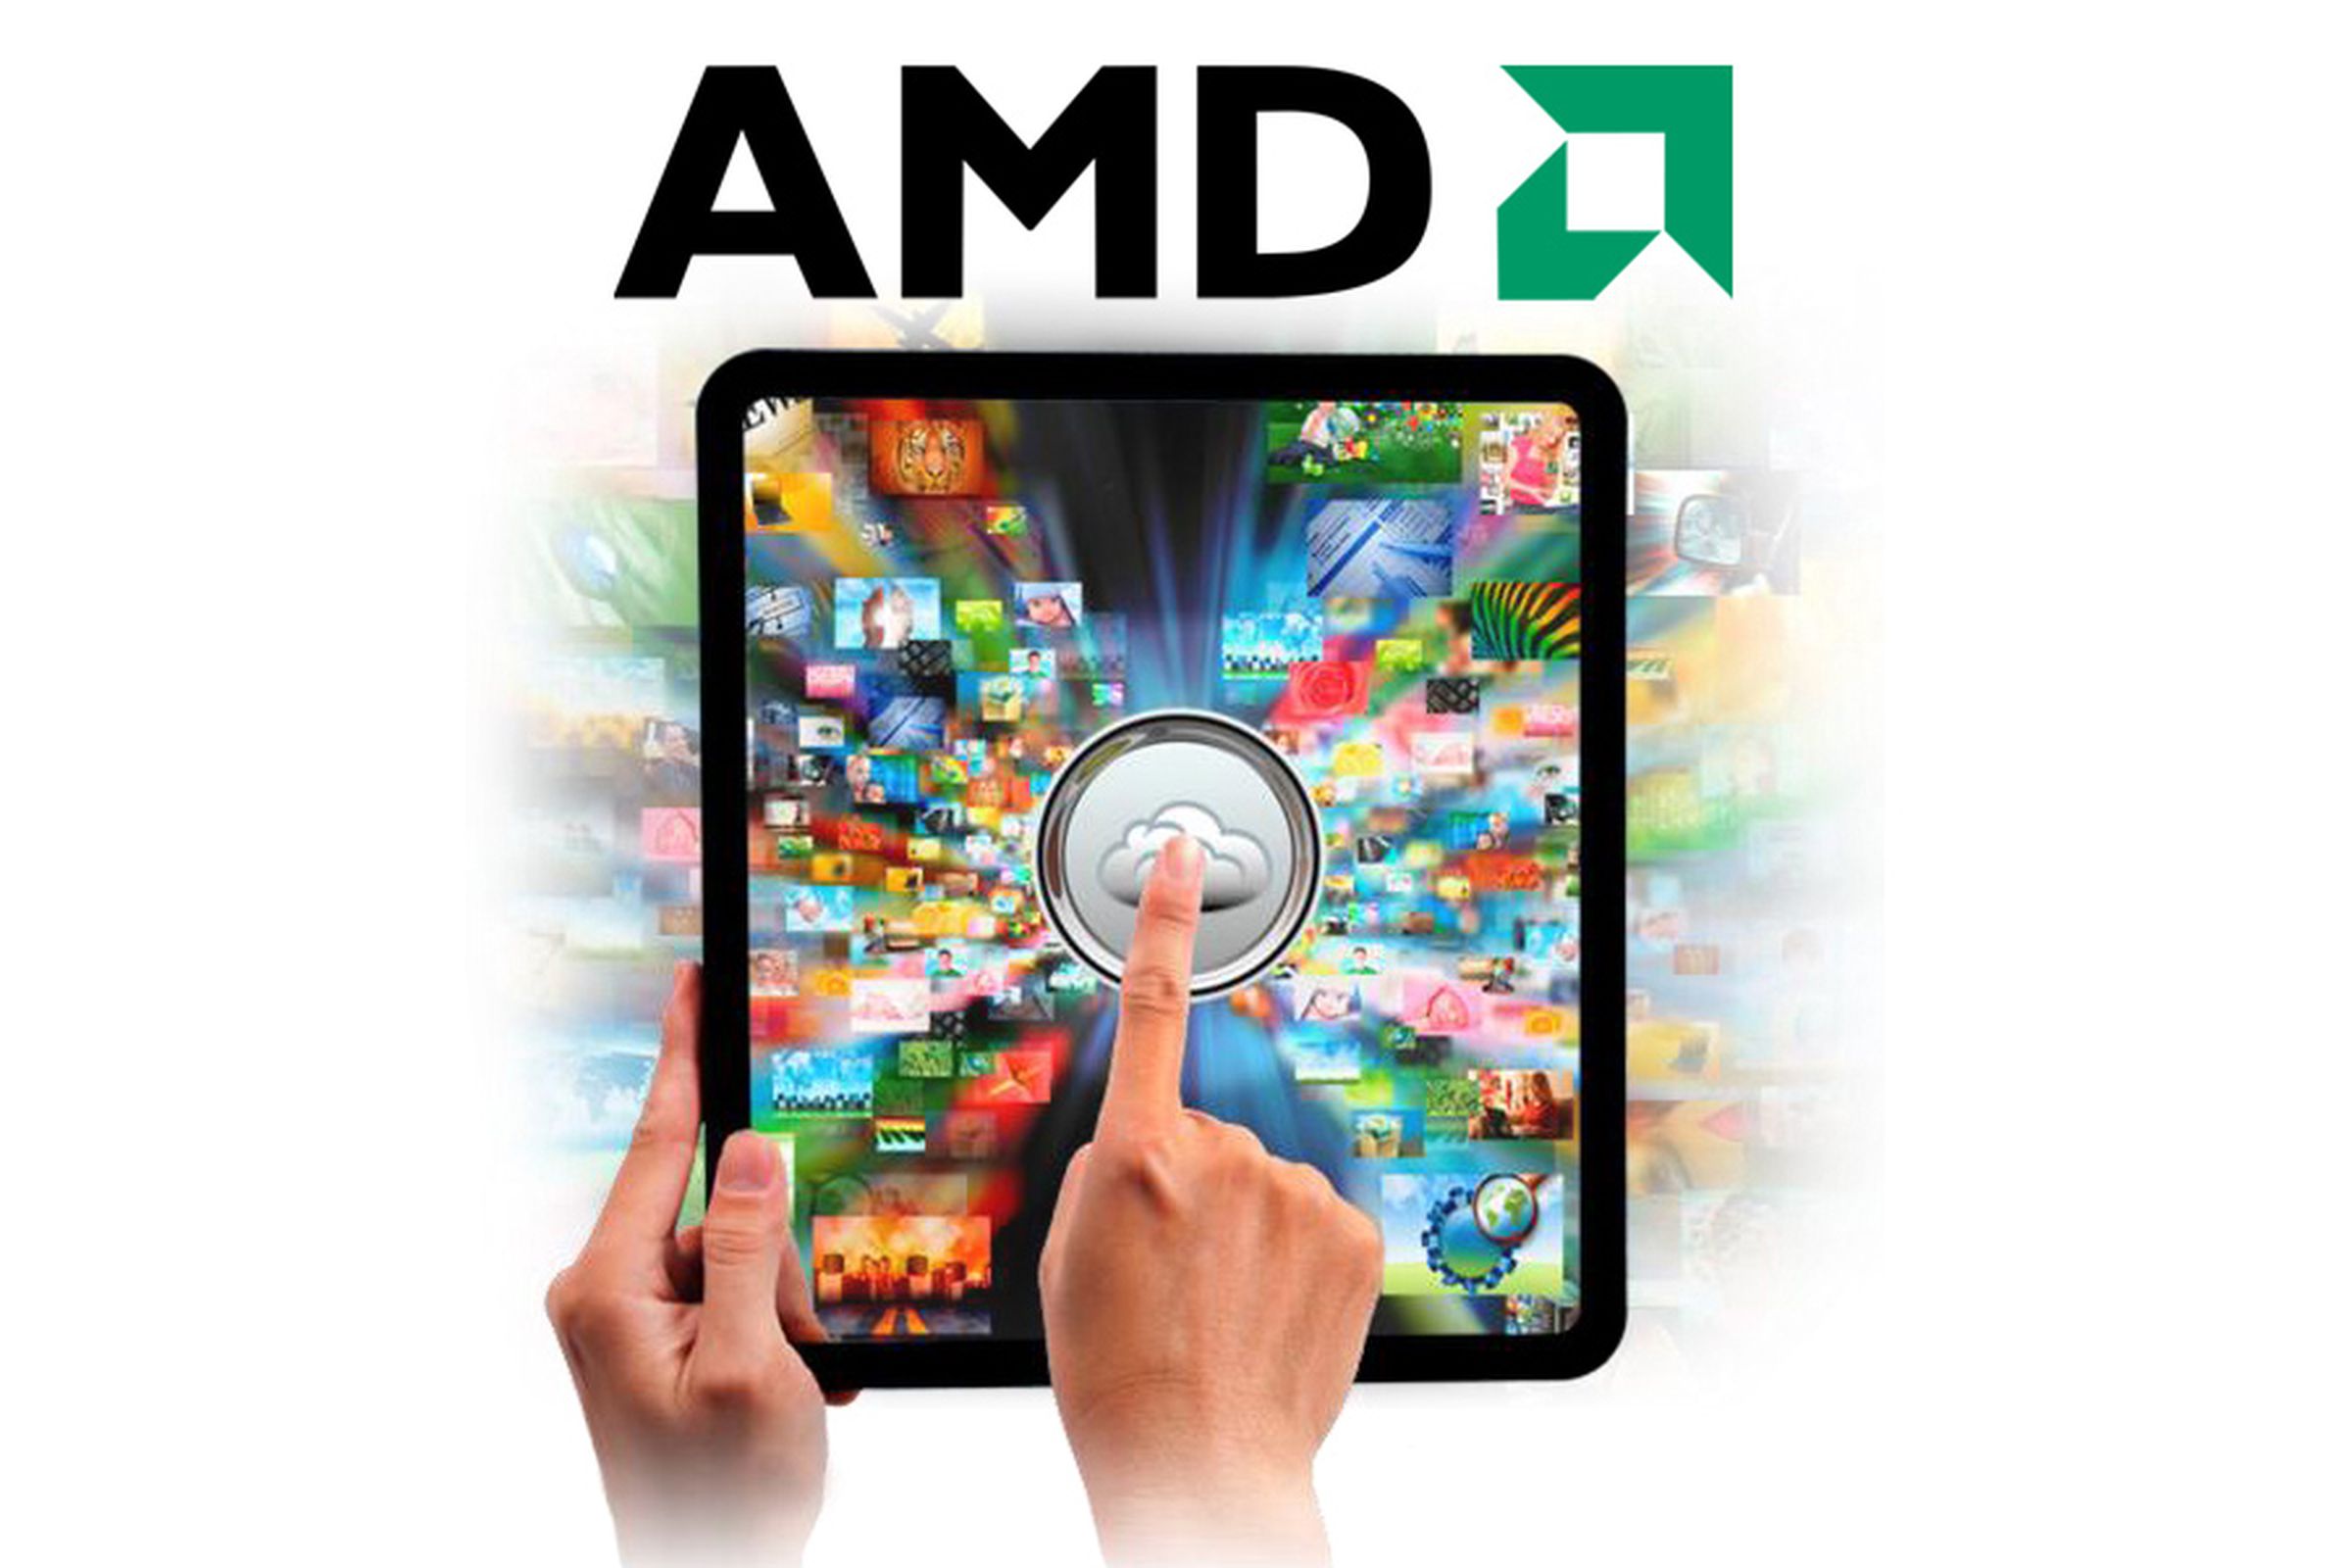 AMD TABLET